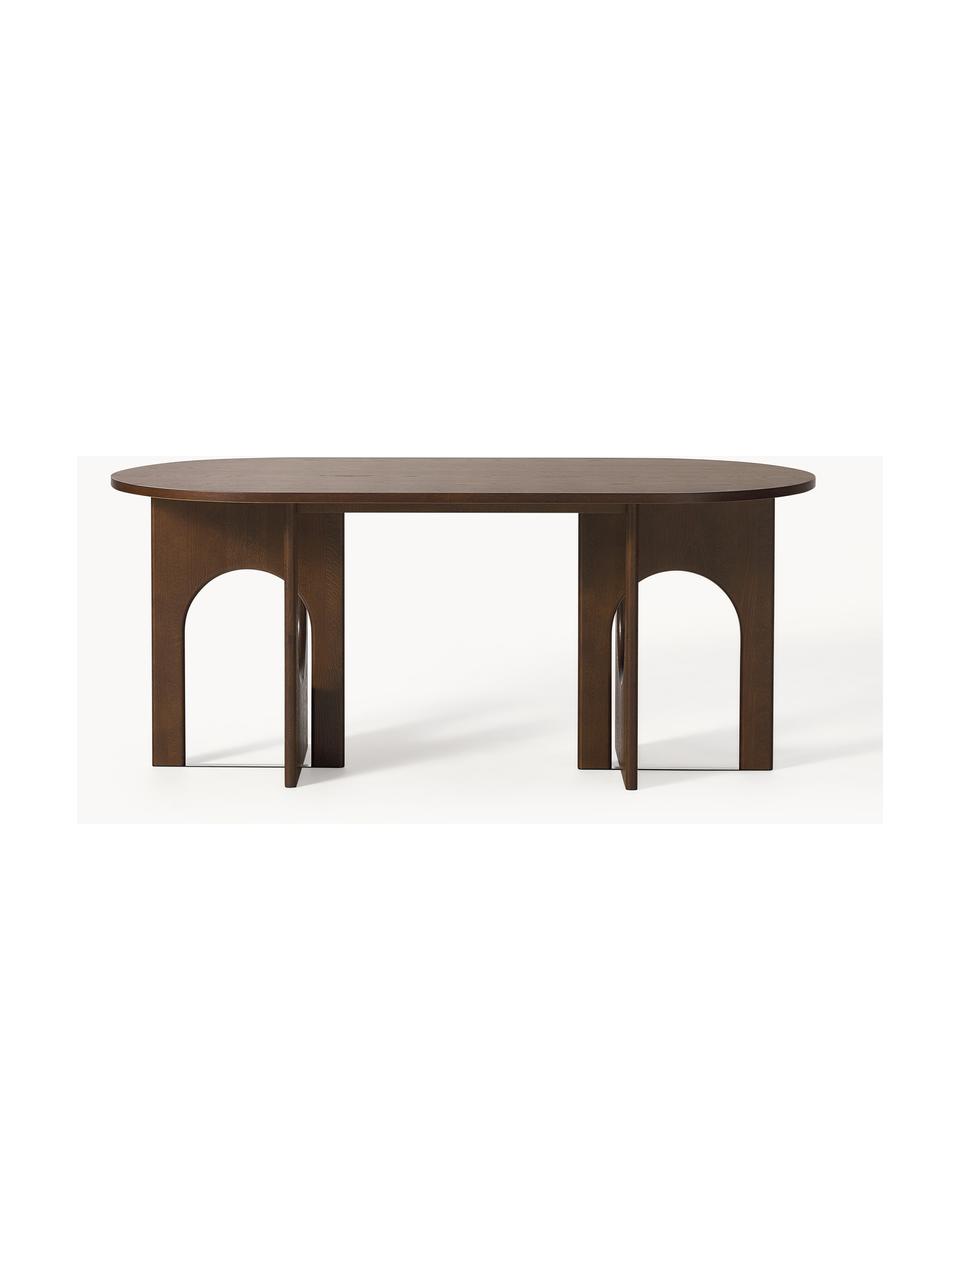 Owalny stół do jadalni Apollo, różne rozmiary, Blat: fornir z drewna dębowego , Nogi: drewno dębowe lakierowane, Drewno dębowe lakierowane na ciemnobrązowo, S 180 x G 90 cm